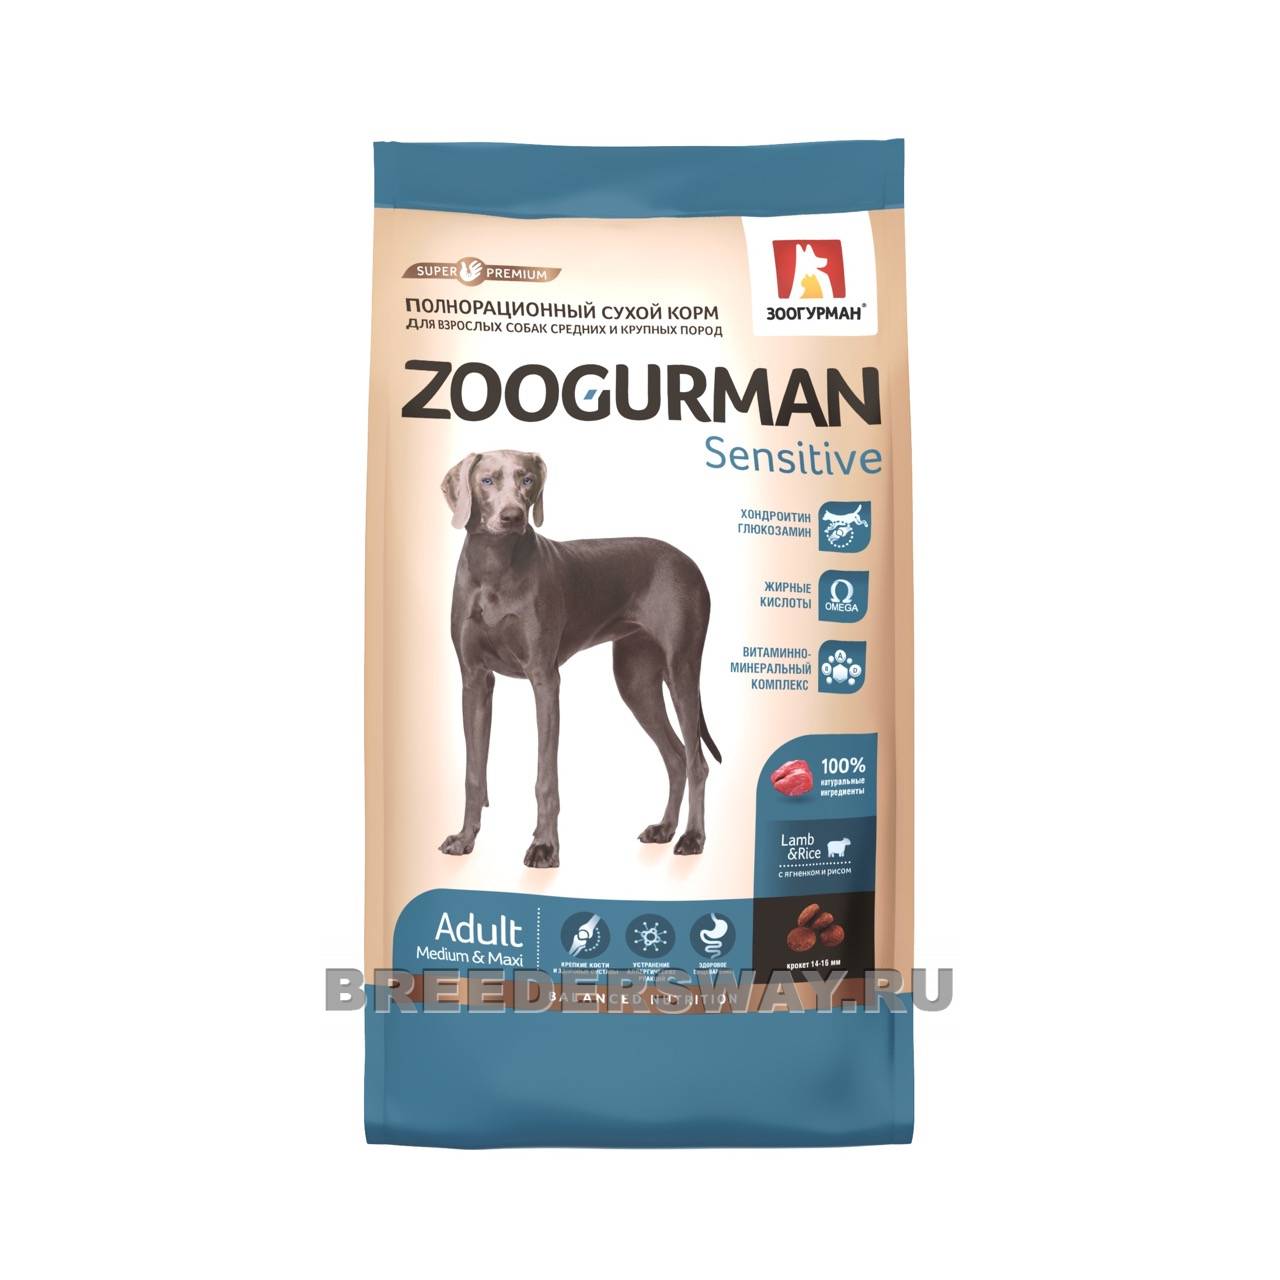 2,2кг Zoogurman Sensitive для собак крупных пород супер-премиум Ягненок с рисом 23/11 14мм